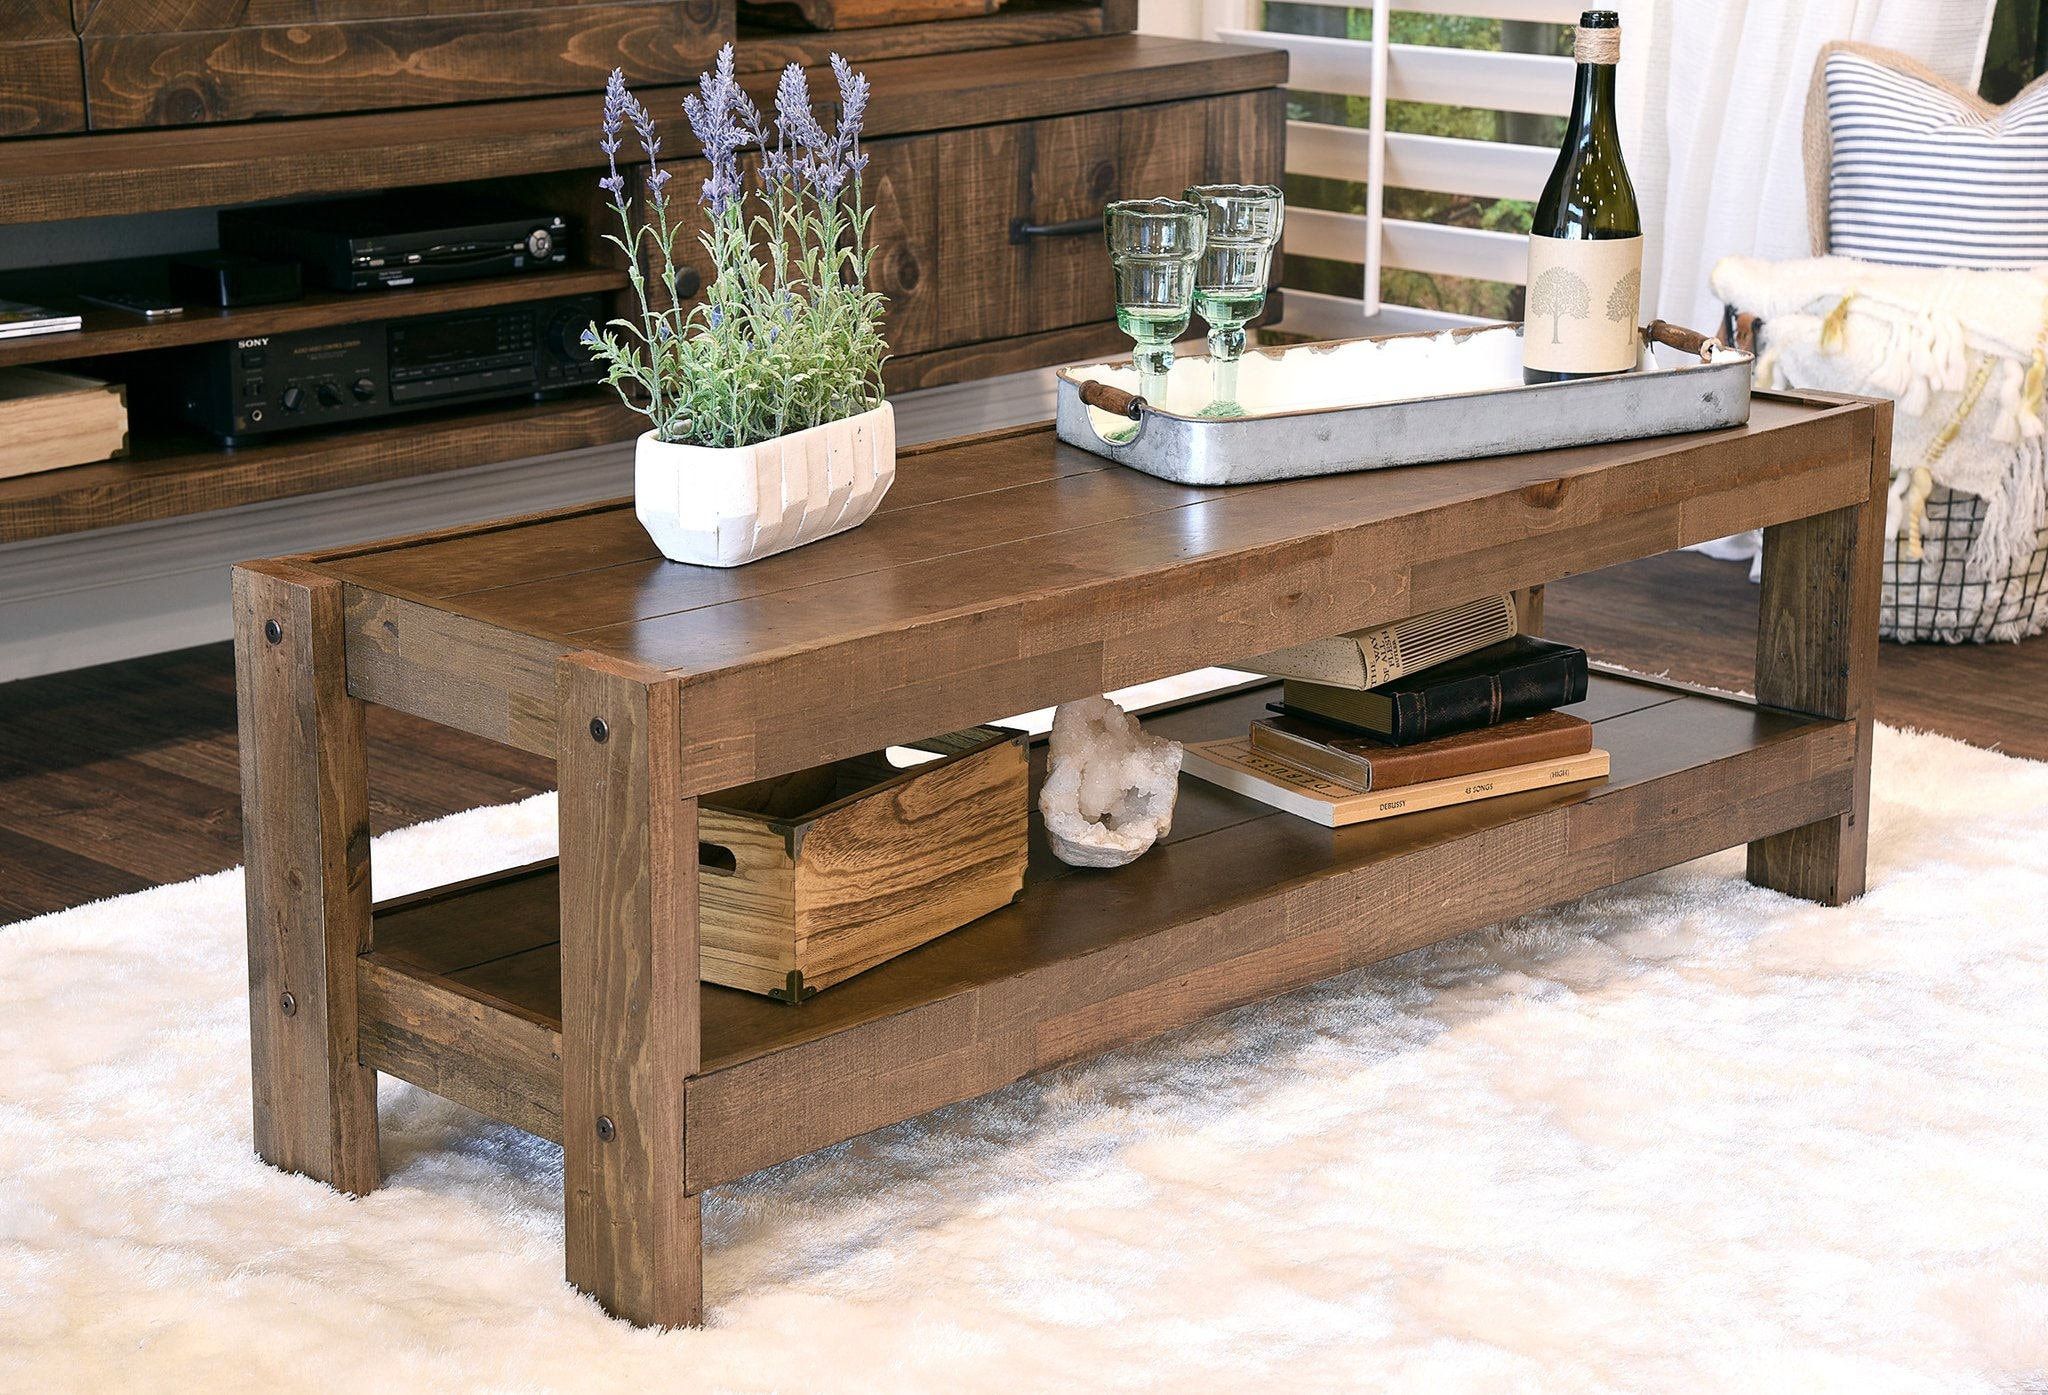 Reclaimed Wood Coffee Table Rustic Barn Wood Style | Etsy With Regard To Rustic Wood Coffee Tables (Gallery 5 of 21)